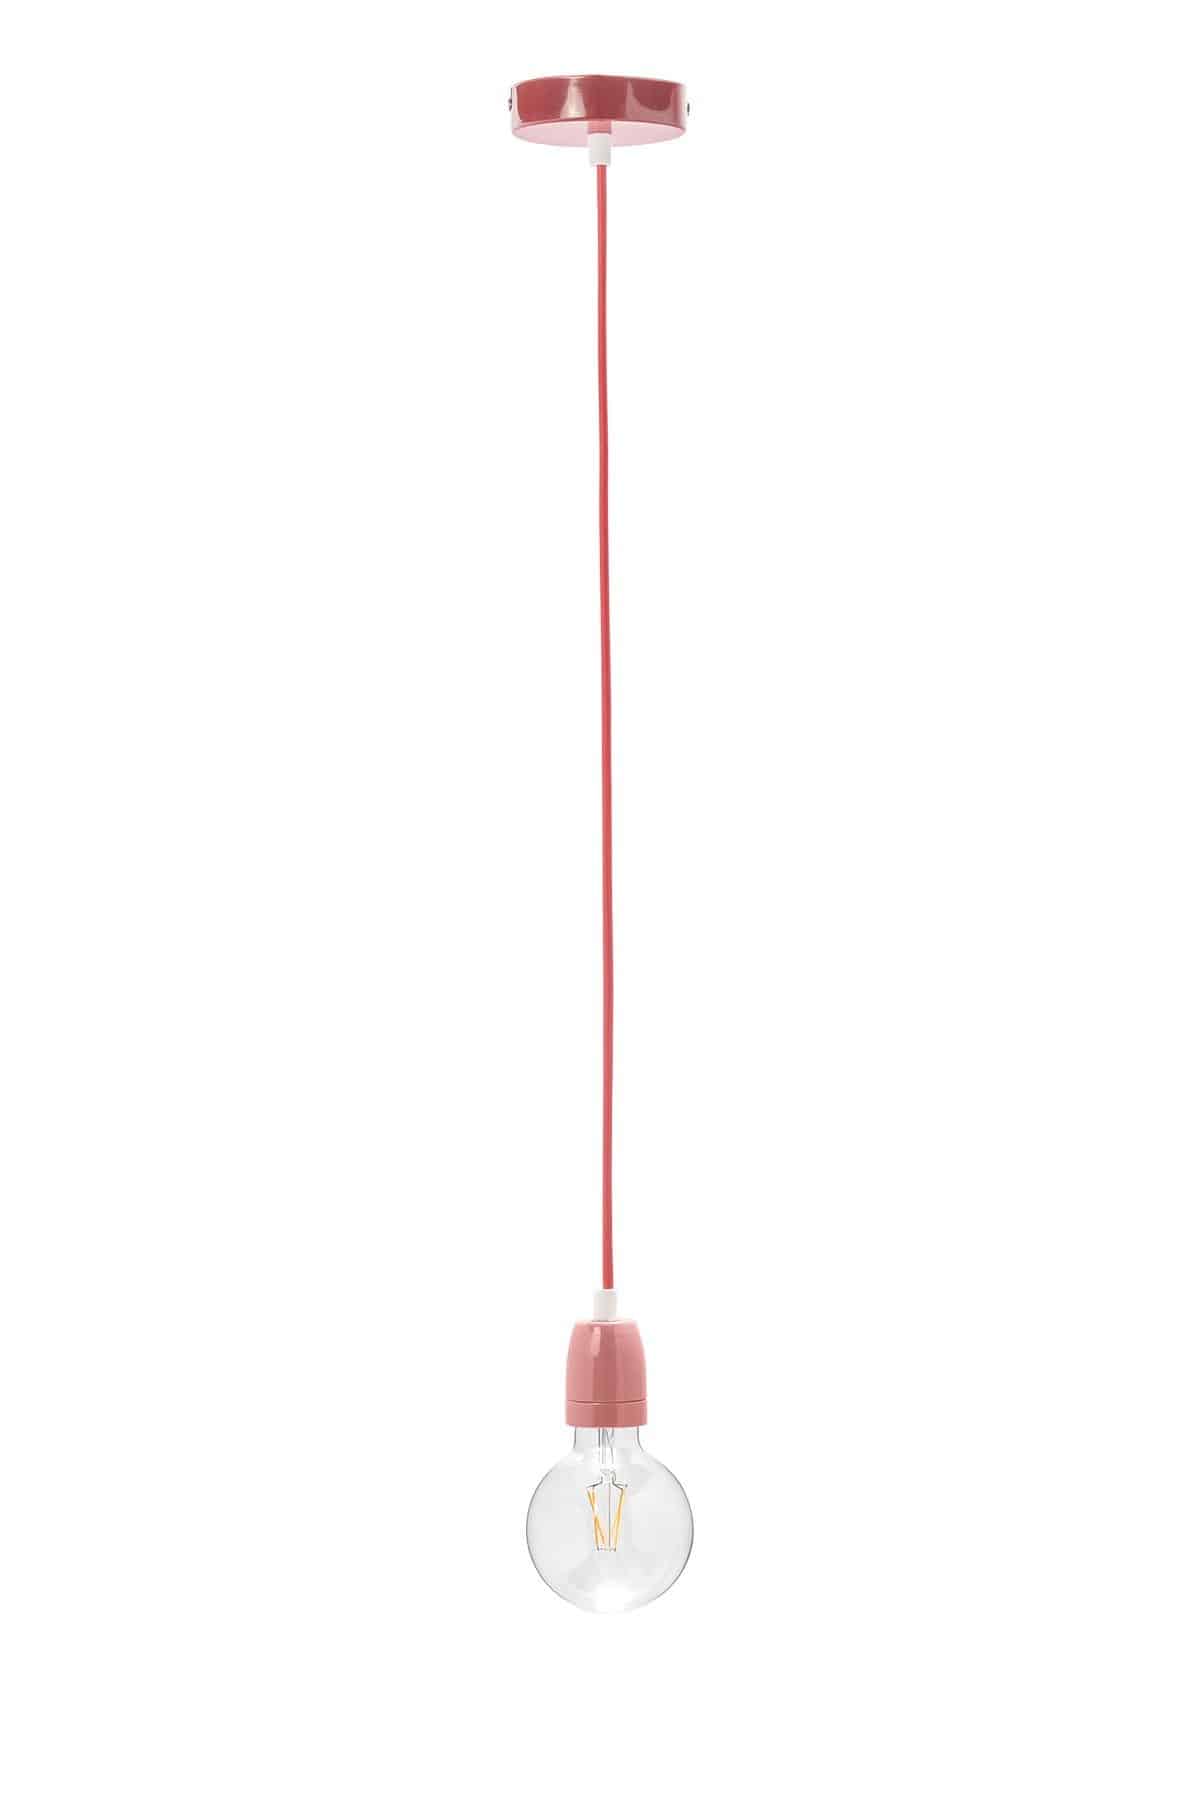 Κόκκινο κρεμαστό φωτιστικό με ντουϊ, ροζέτα και υφασμάτινο καλώδιο, my fabric cables